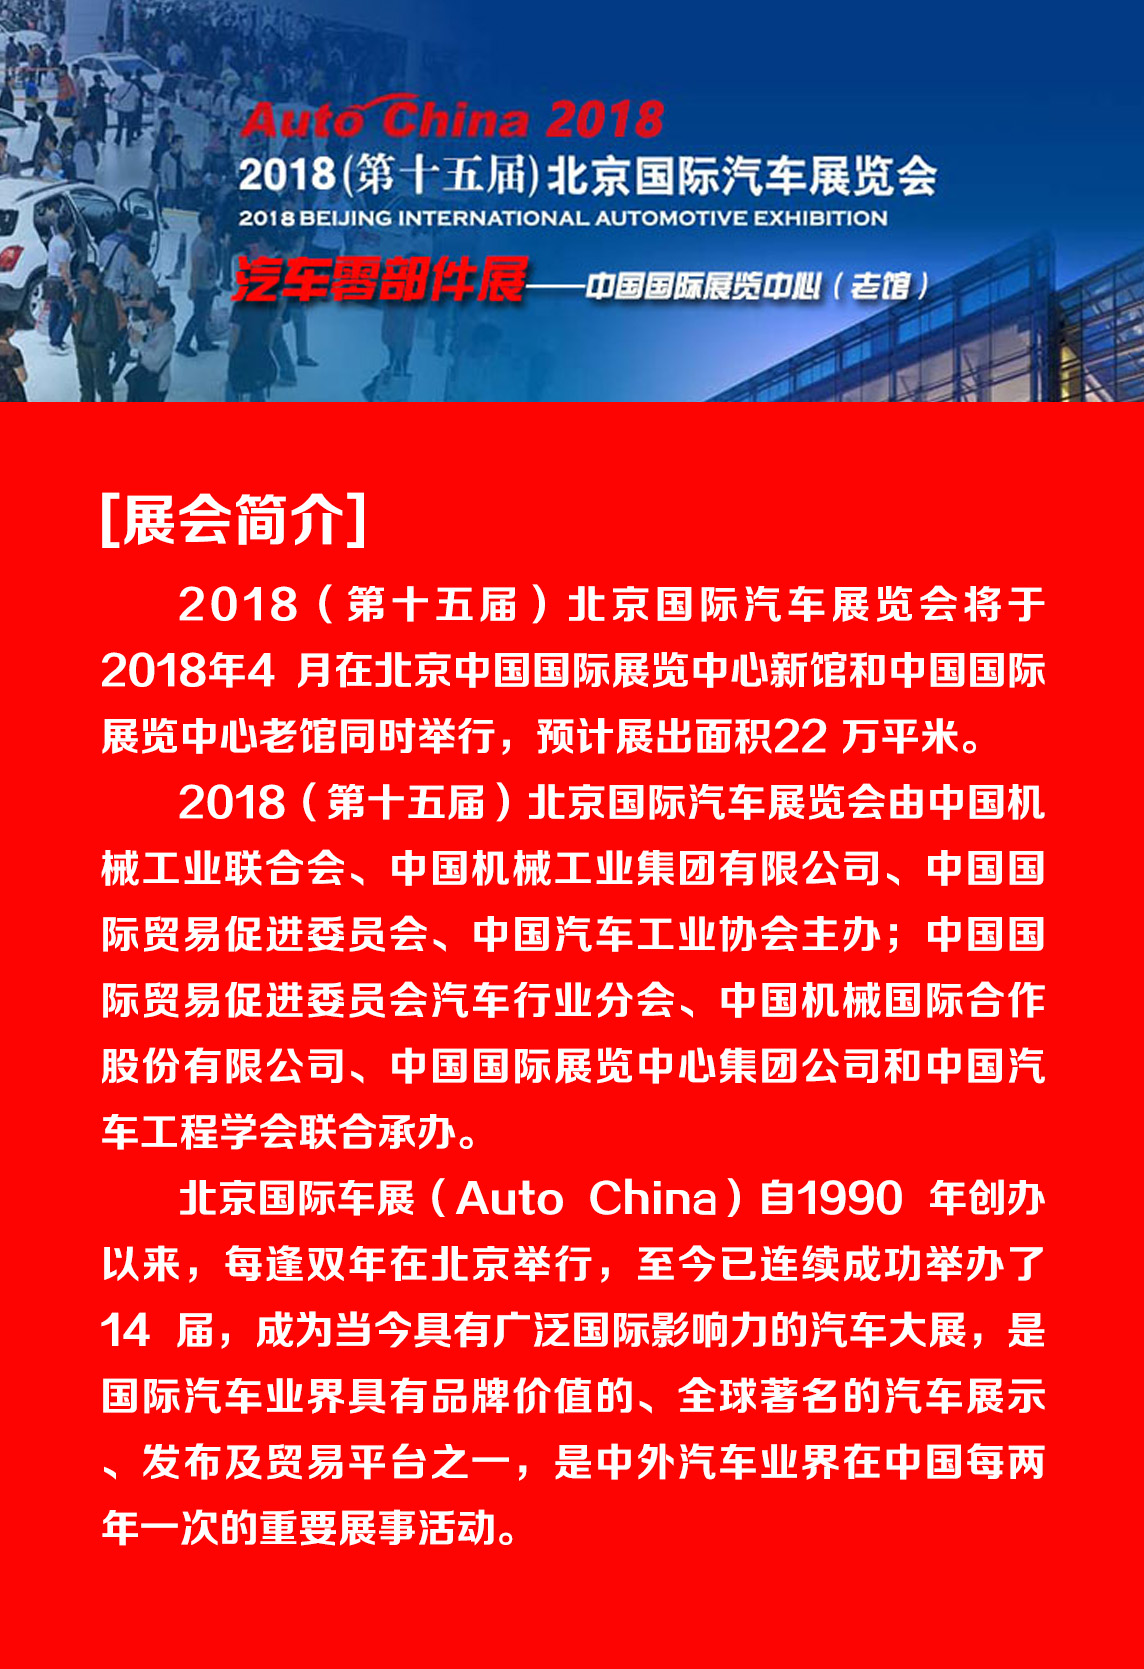 博盈彩票-2018北京国际汽车展览会邀请函